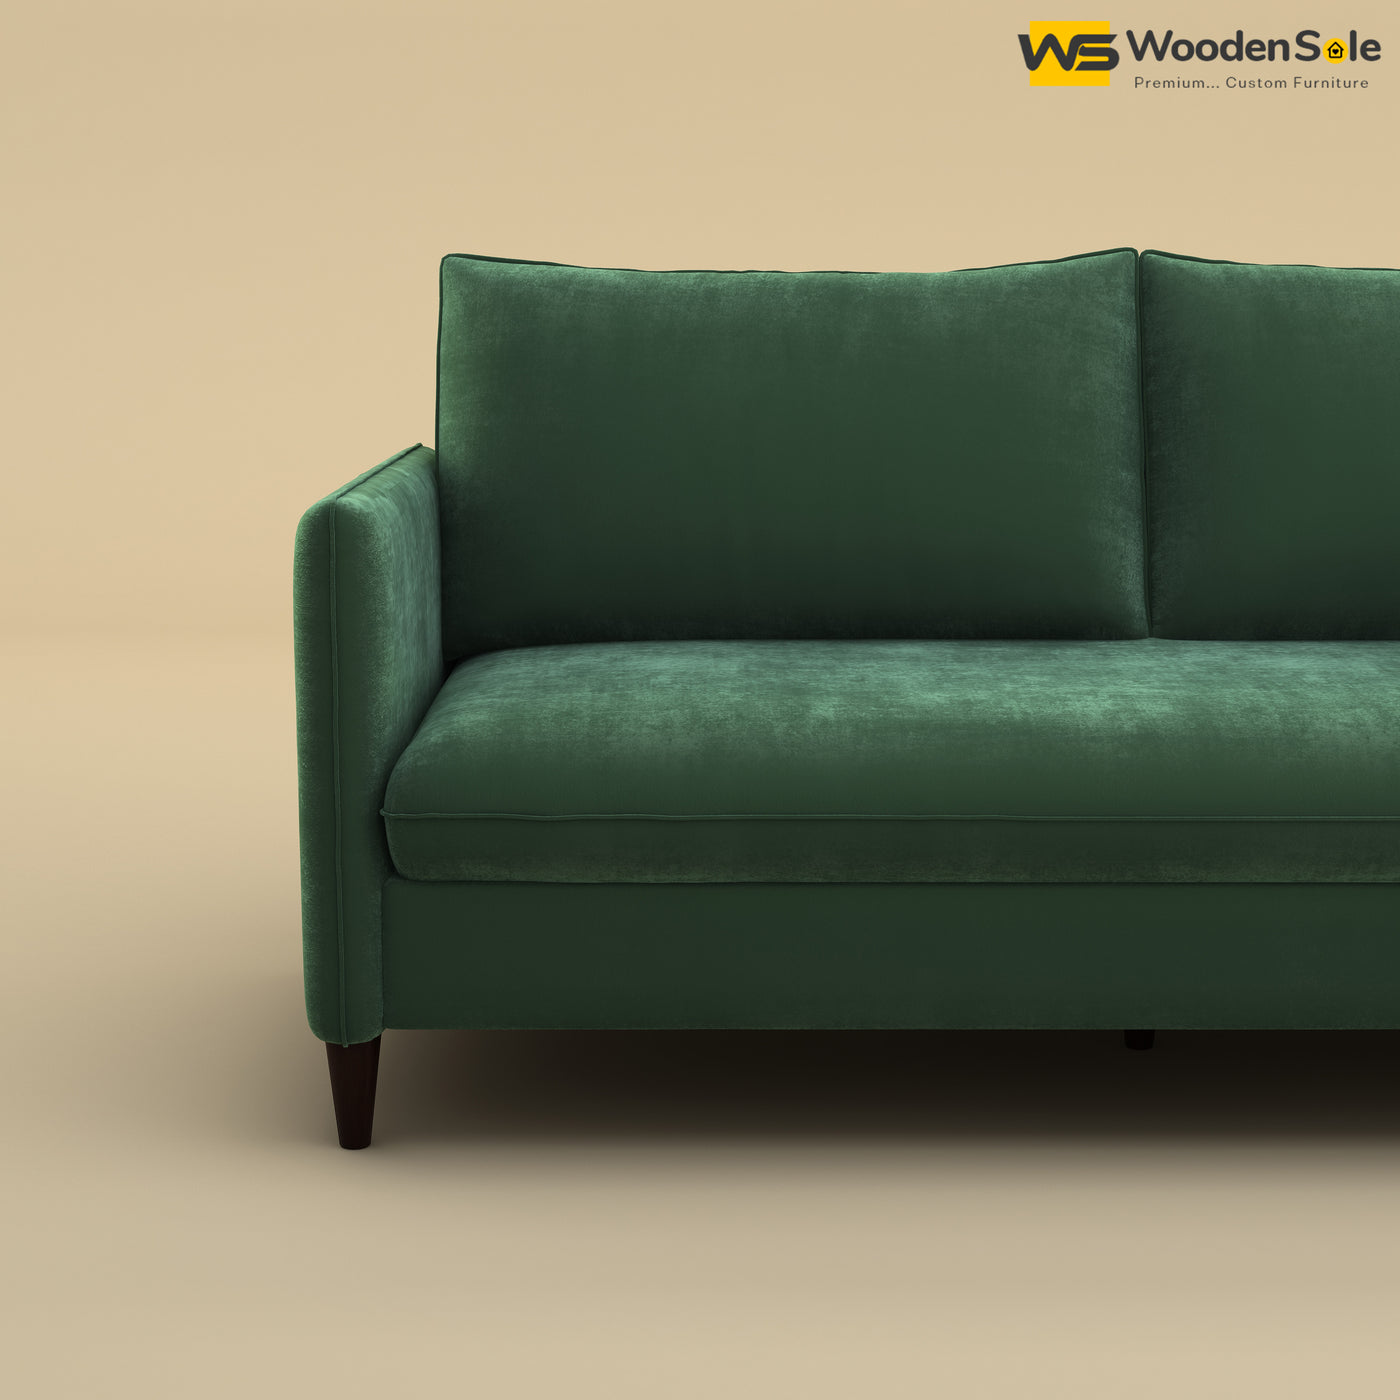 Citron 3 Seater Fabric Sofa (Velvet, Forest Green)